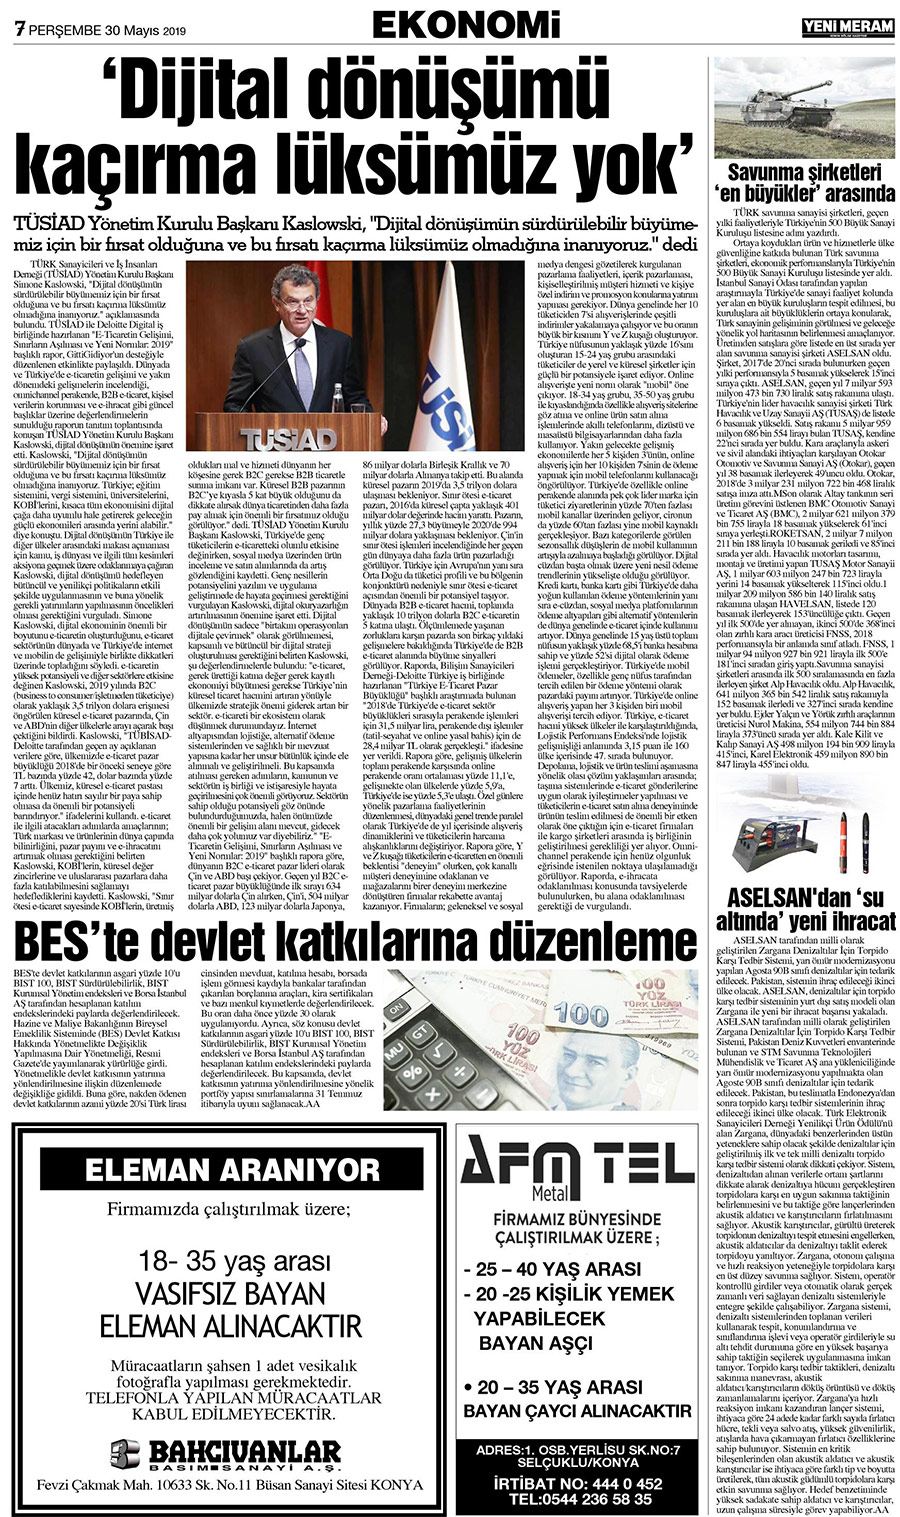 30 Mayıs 2019 Yeni Meram Gazetesi